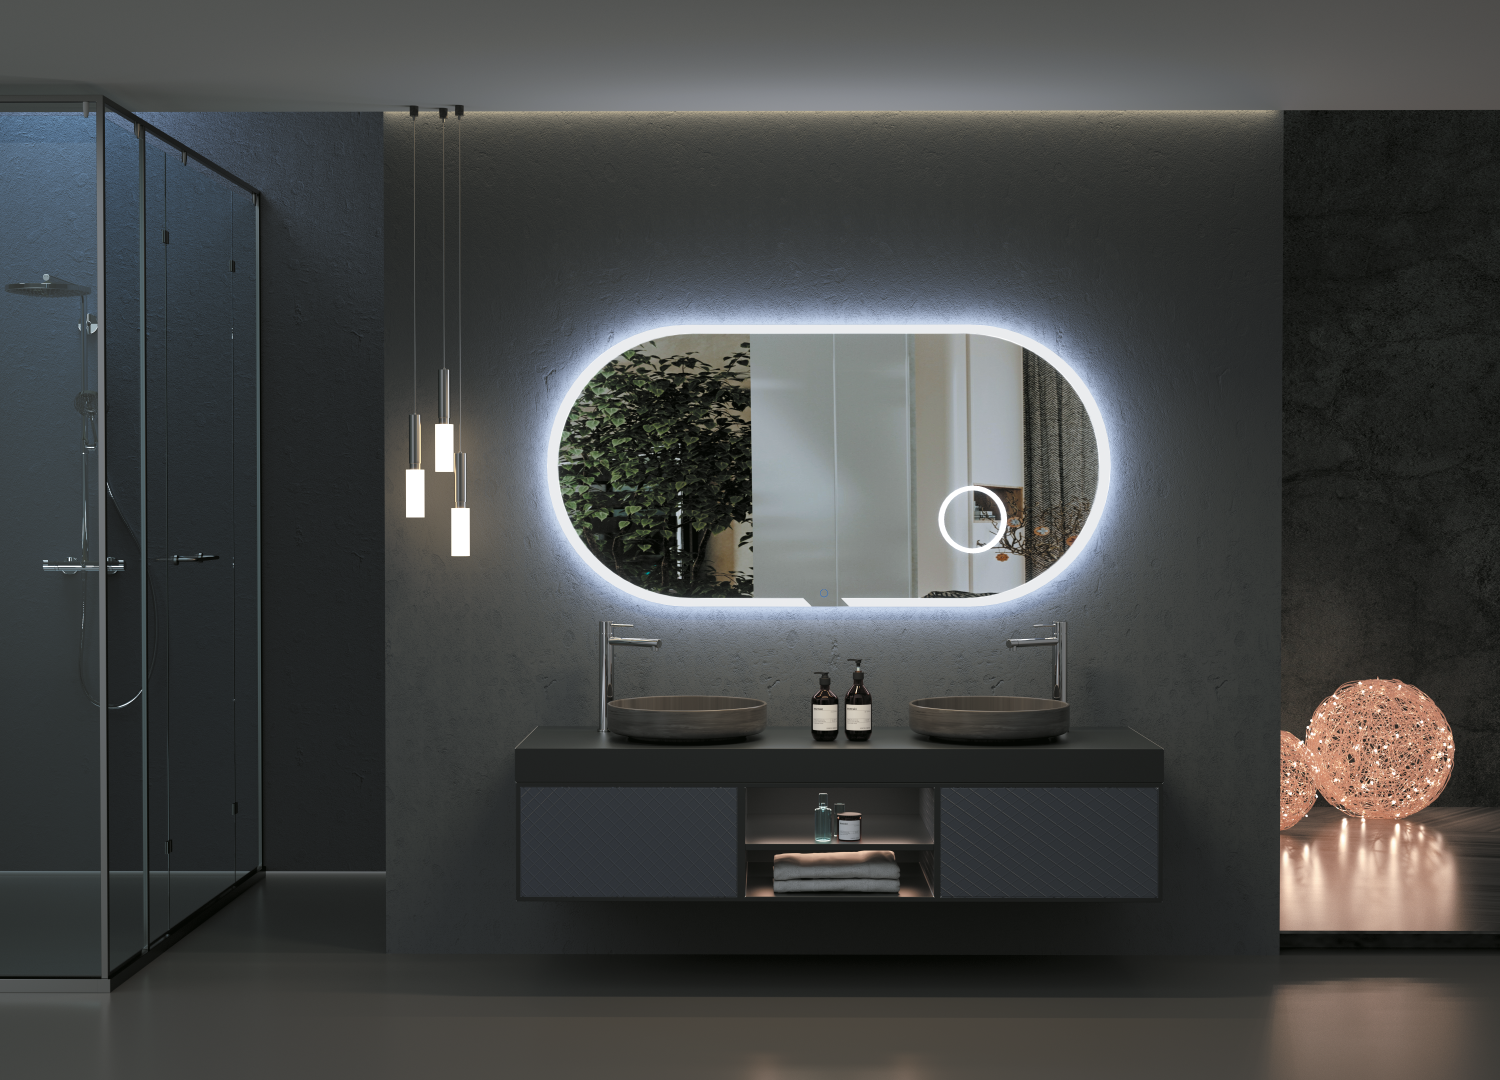 Miroir LEDIMEX avec éclairage intégré - Série Austria - PointVit